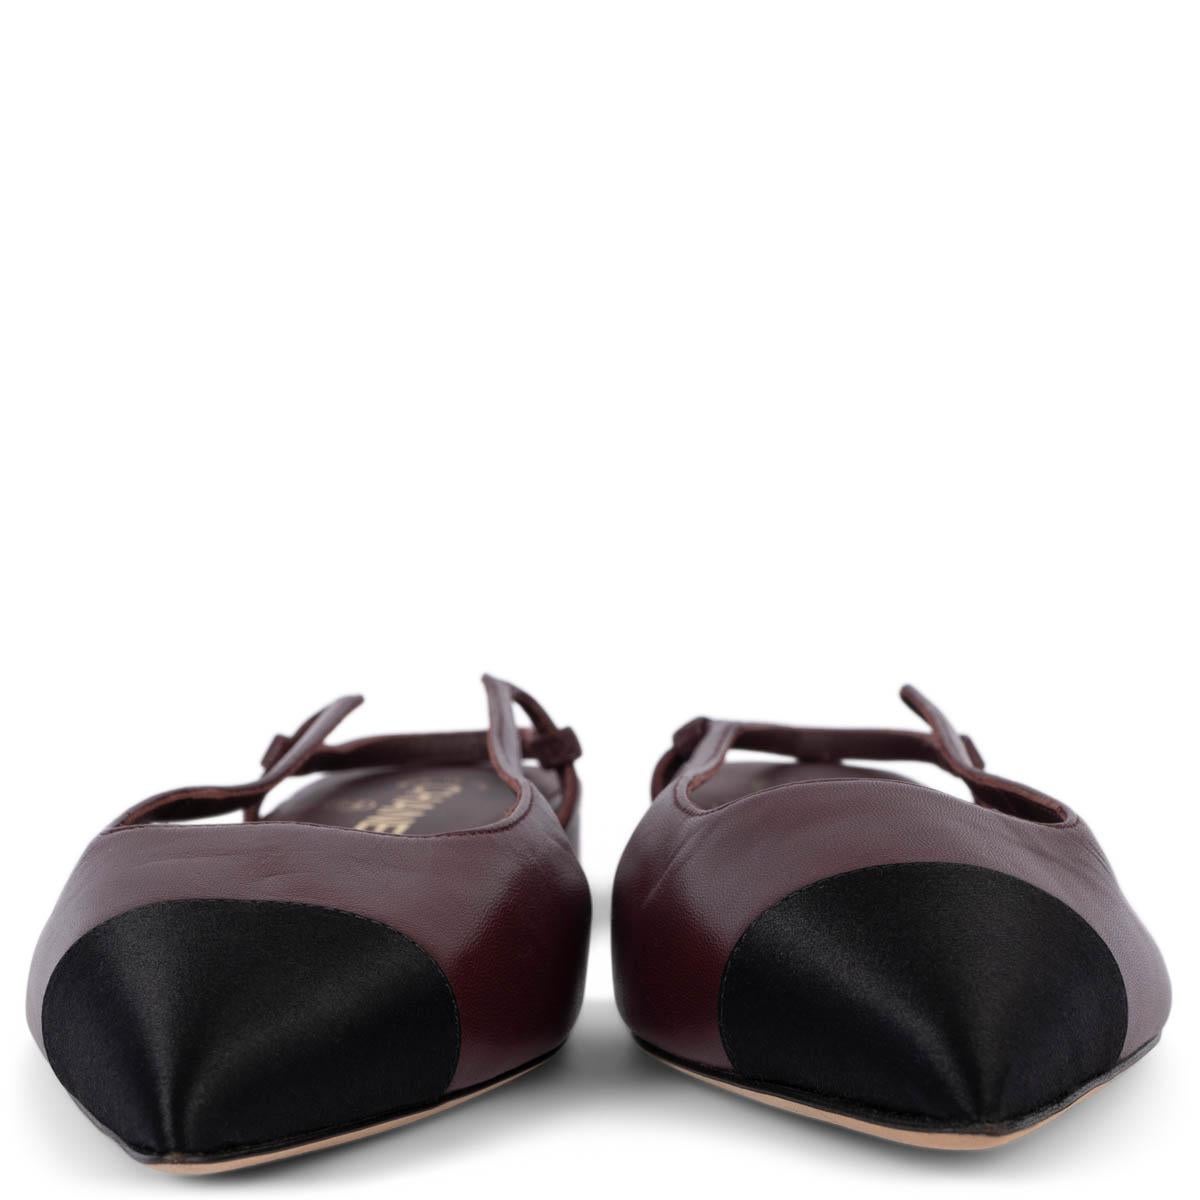 100% authentique Chanel slingback flats in burgundy leather with classic black satin cap toe. Logo CC en métal doré sur le talon. État neuf. 

Mesures
Modèle	G35261
Taille imprimée	39 s'adapte à 38,5
Taille des chaussures	38.5
Semelle